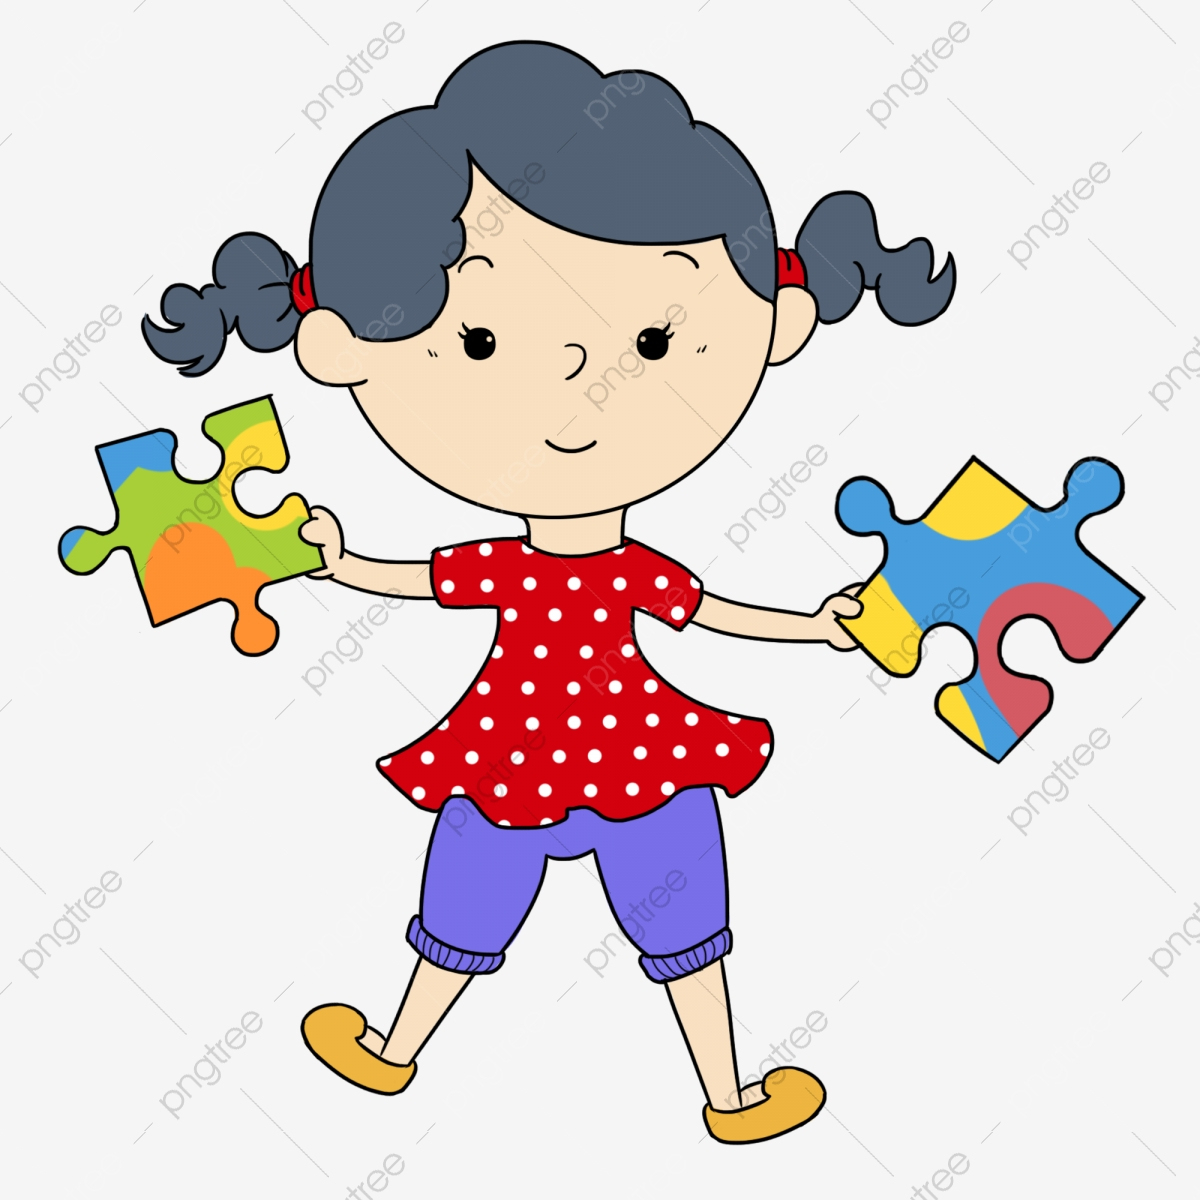 Jeu Intellectuel Puzzle Été Enfant, Jolie Fille, Jeu intérieur Puzzle Gratuit Enfant